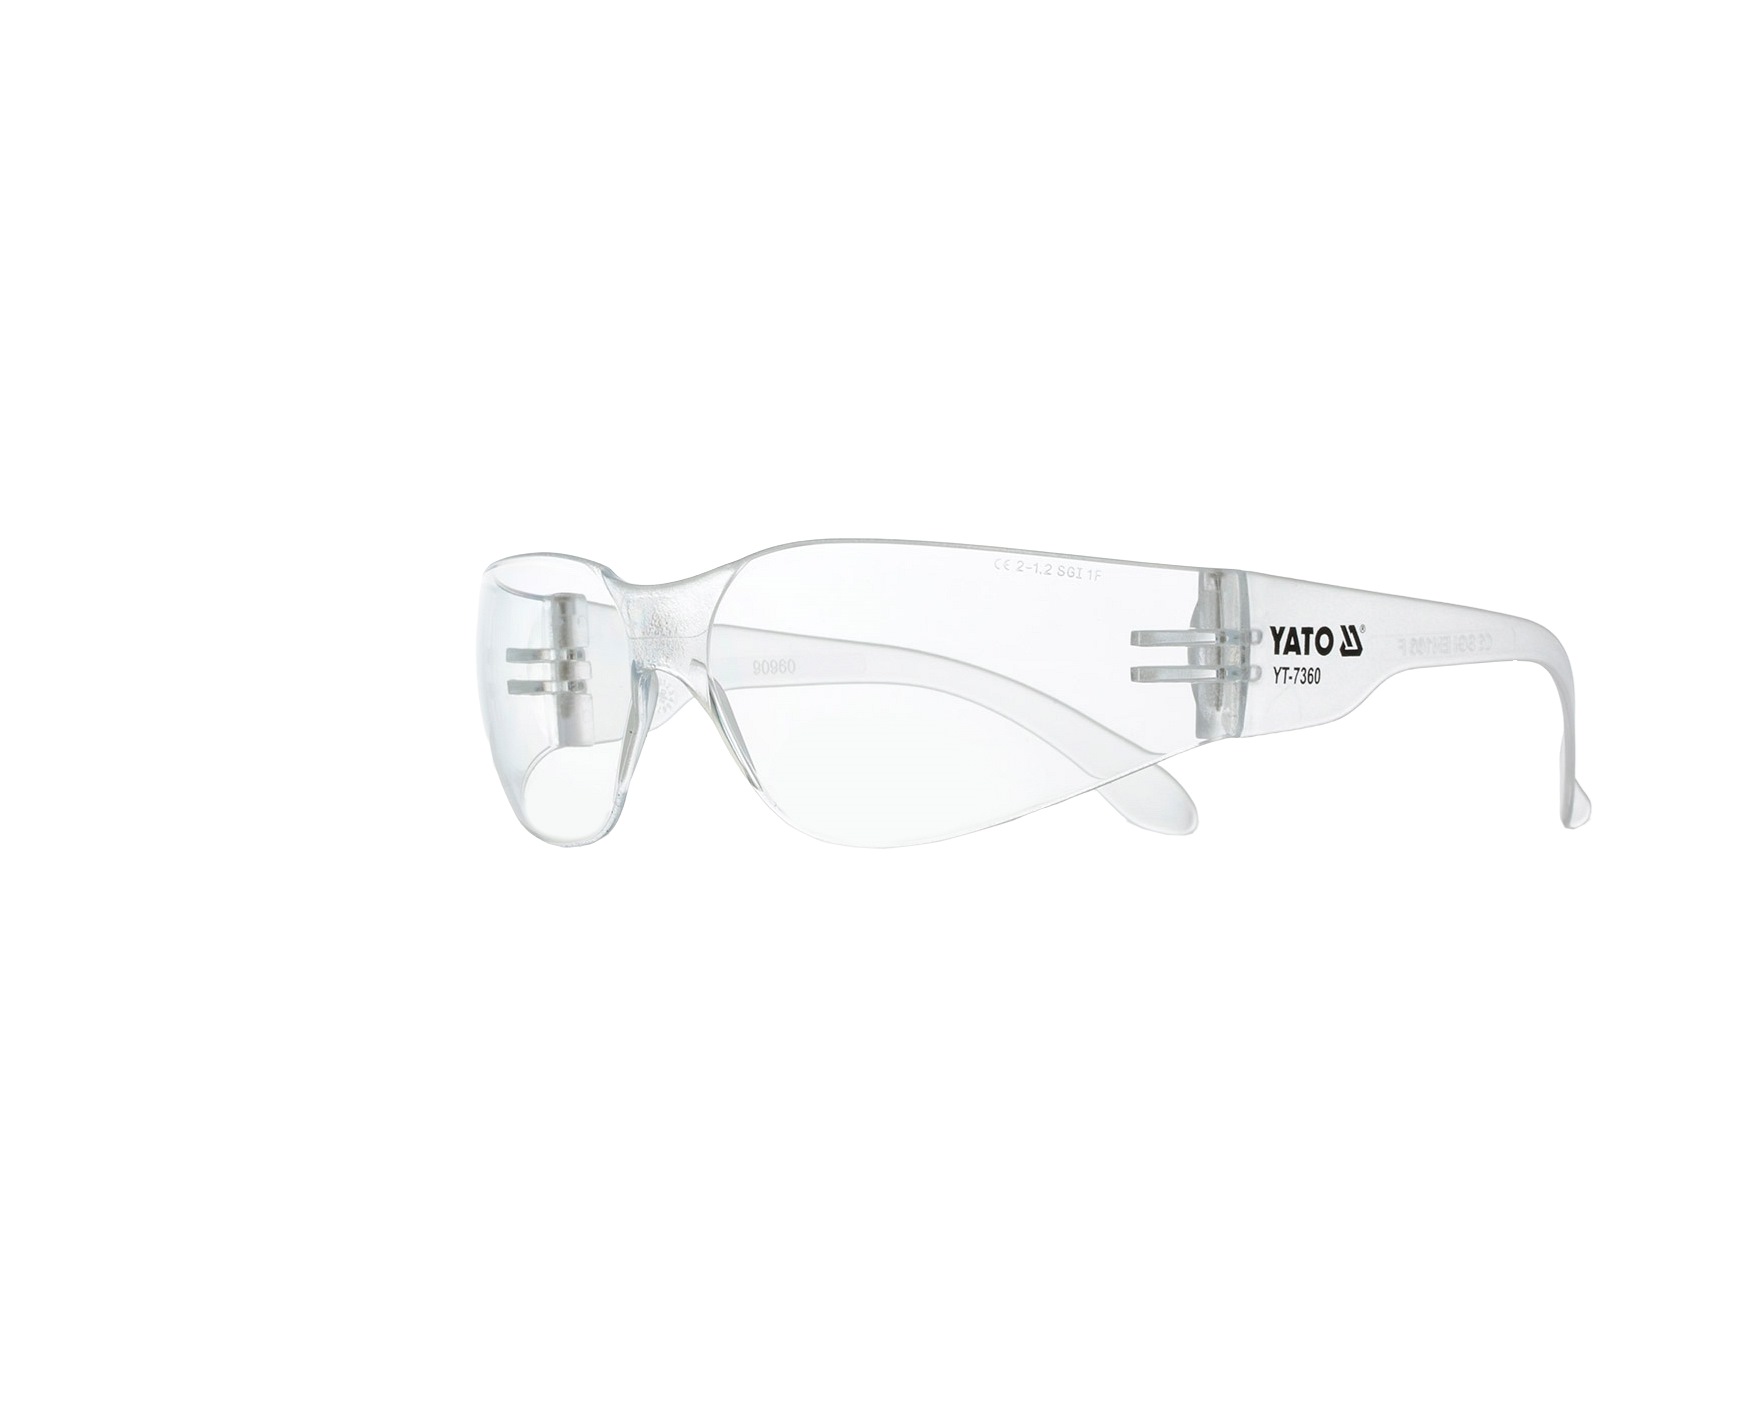 Günstige Schutzbrille mit Artikelnummer: YT-7360 jetzt bestellen